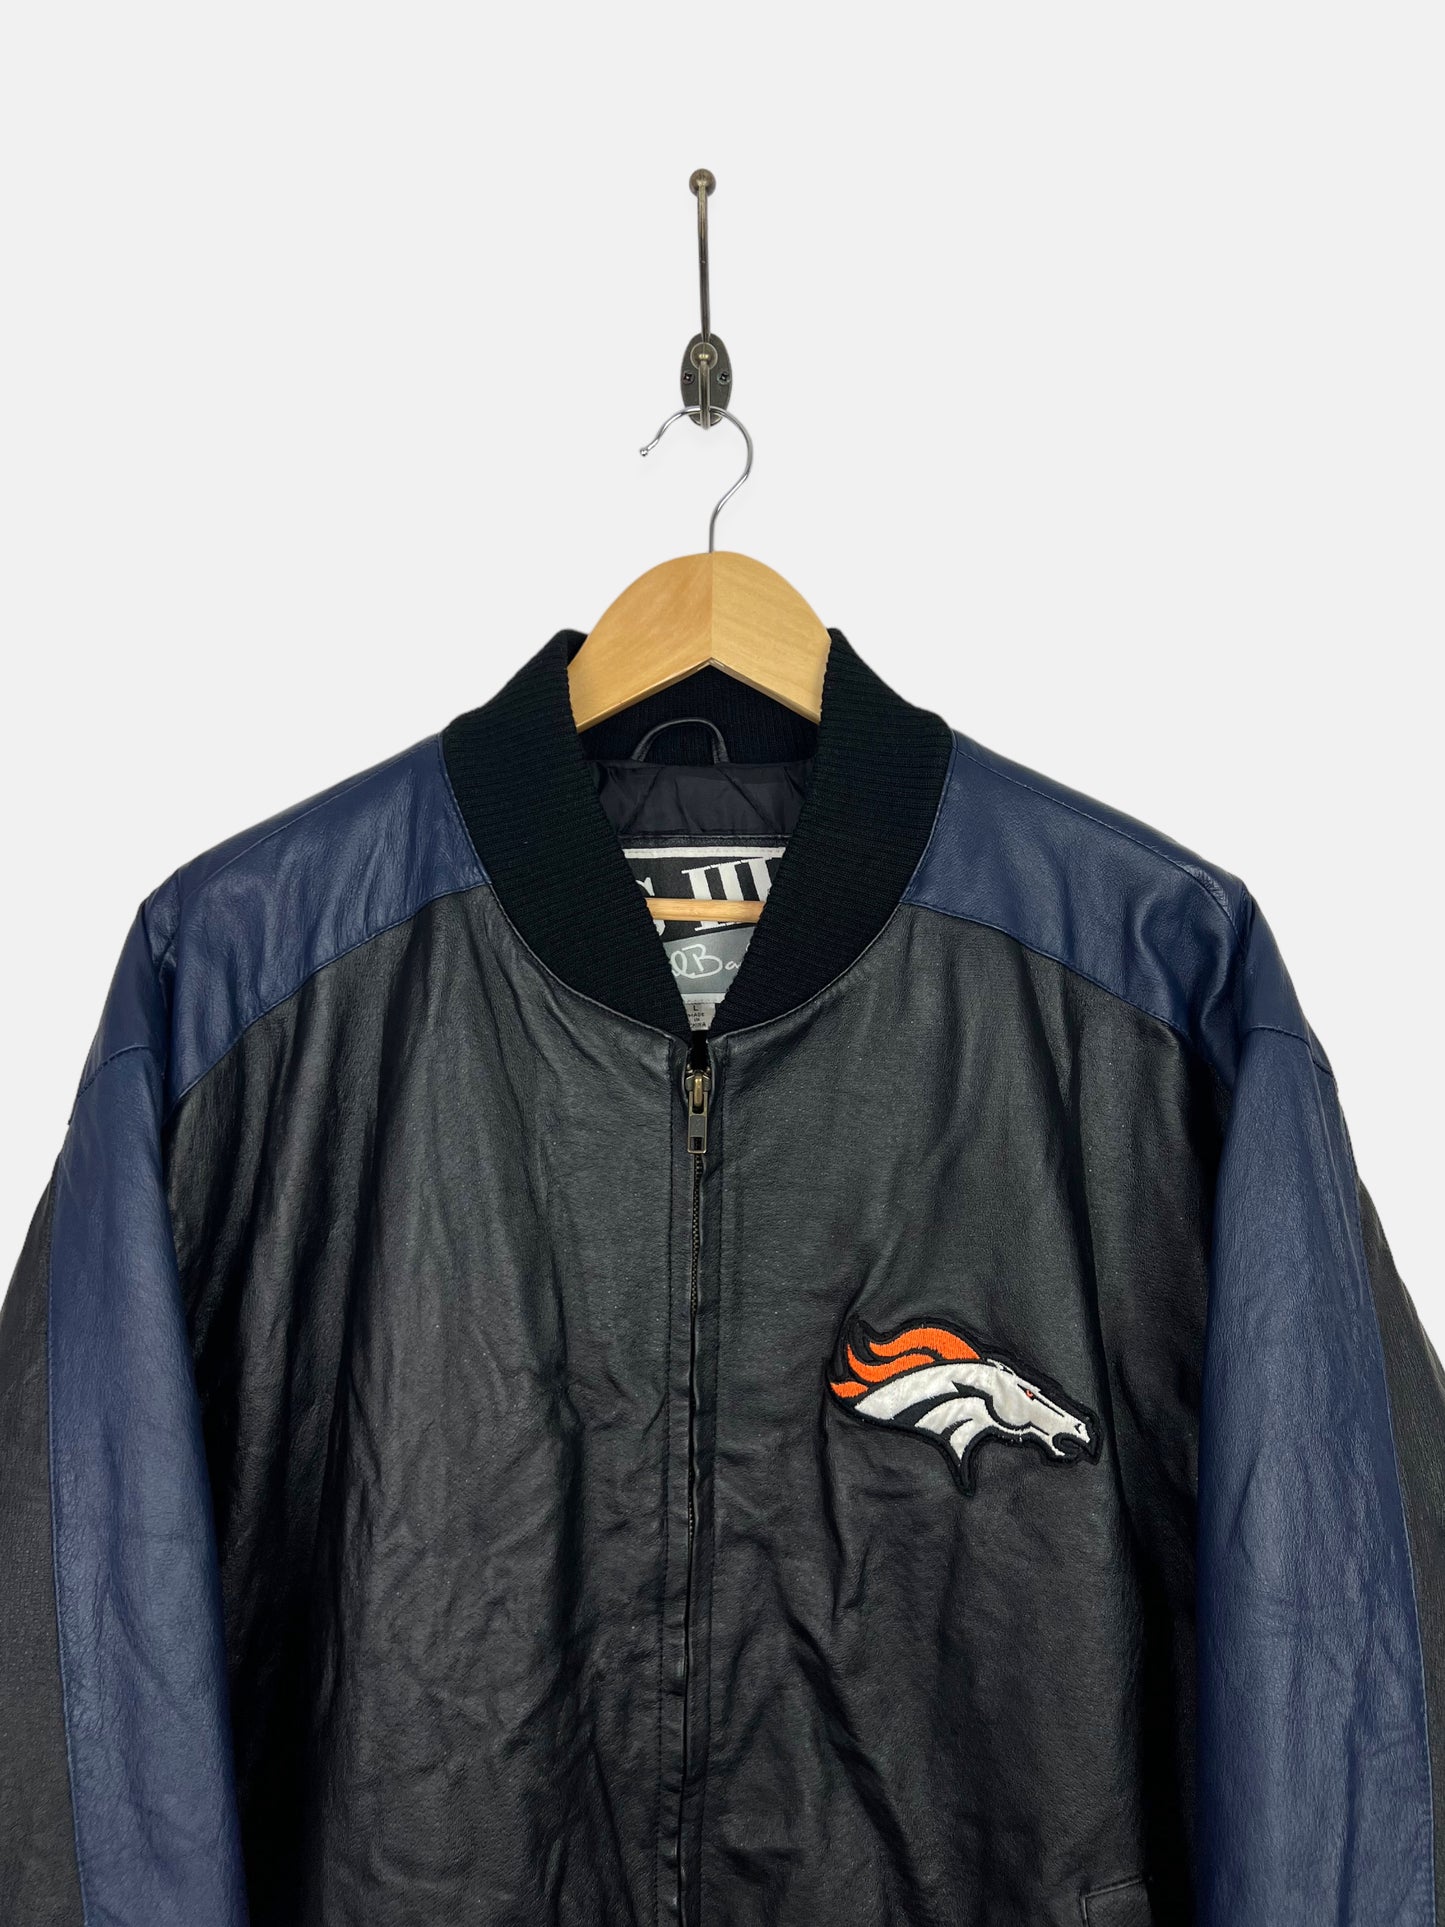 90's Denver Broncos NFL Embroidered Vintage Leather Jacket Size L-XL